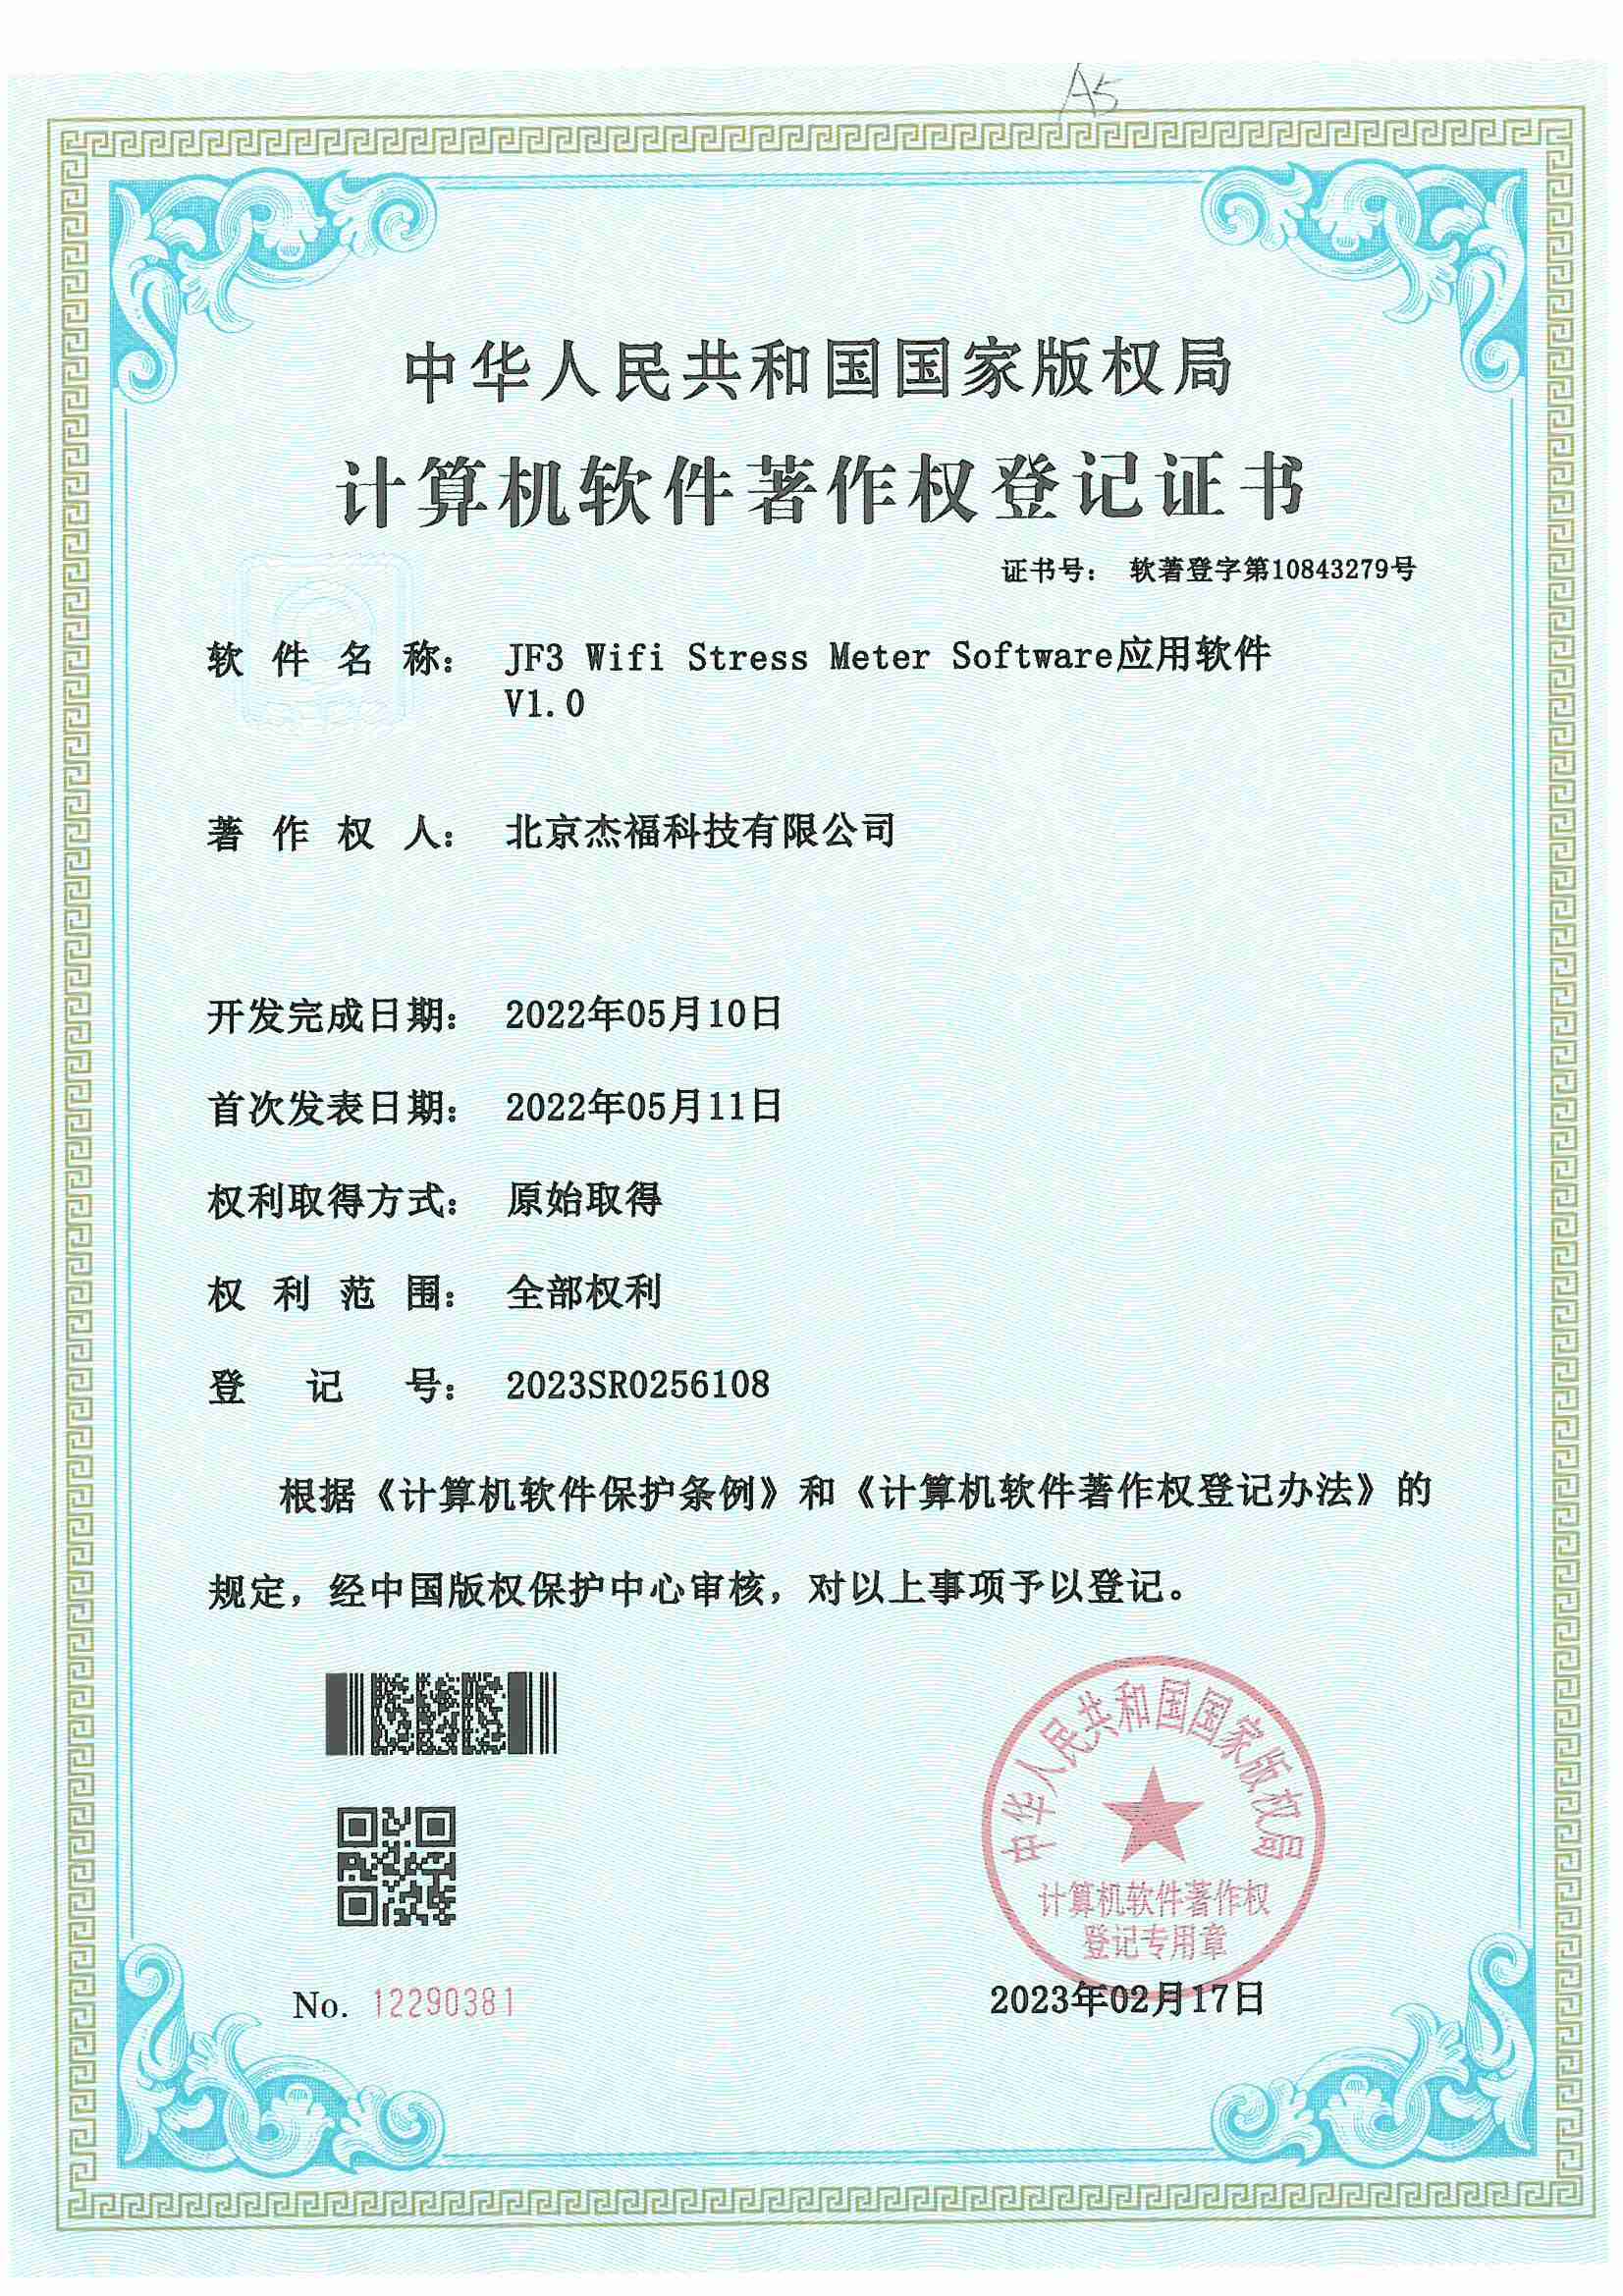 Certificate14